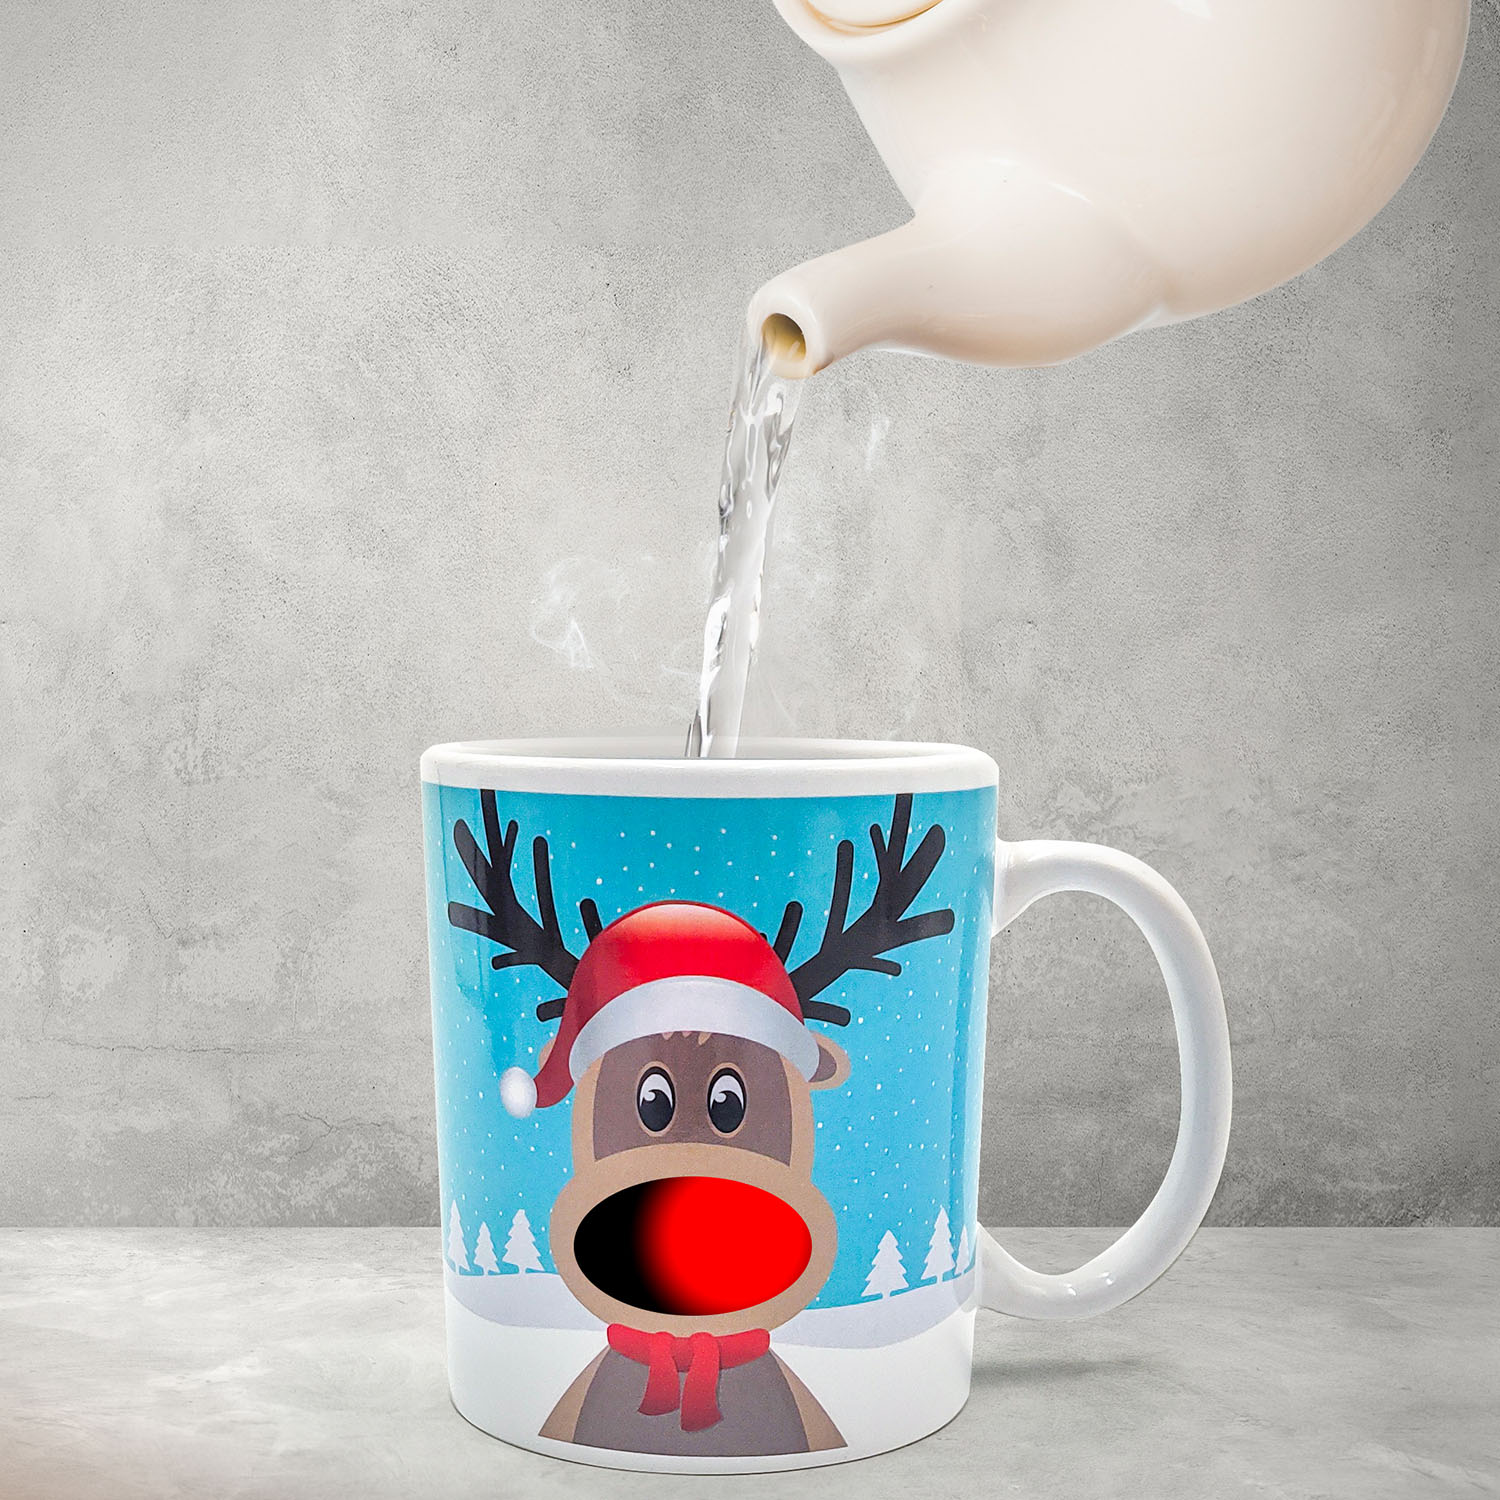 Mad Monkey - Tasse "Reindeer Mug" - Rentier Tasse mit Farbwechsel